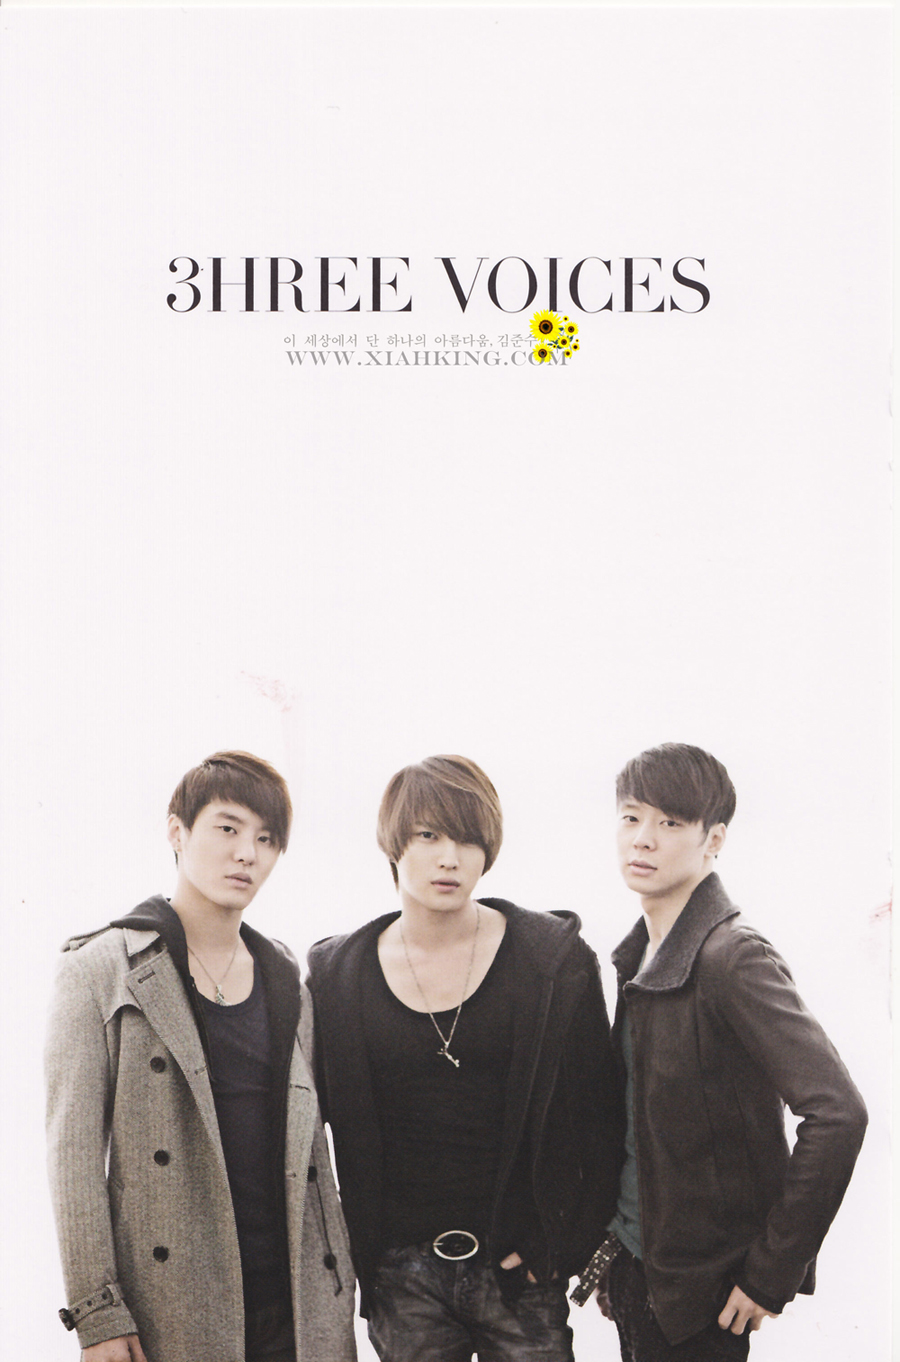 3hree voices (1).jpg